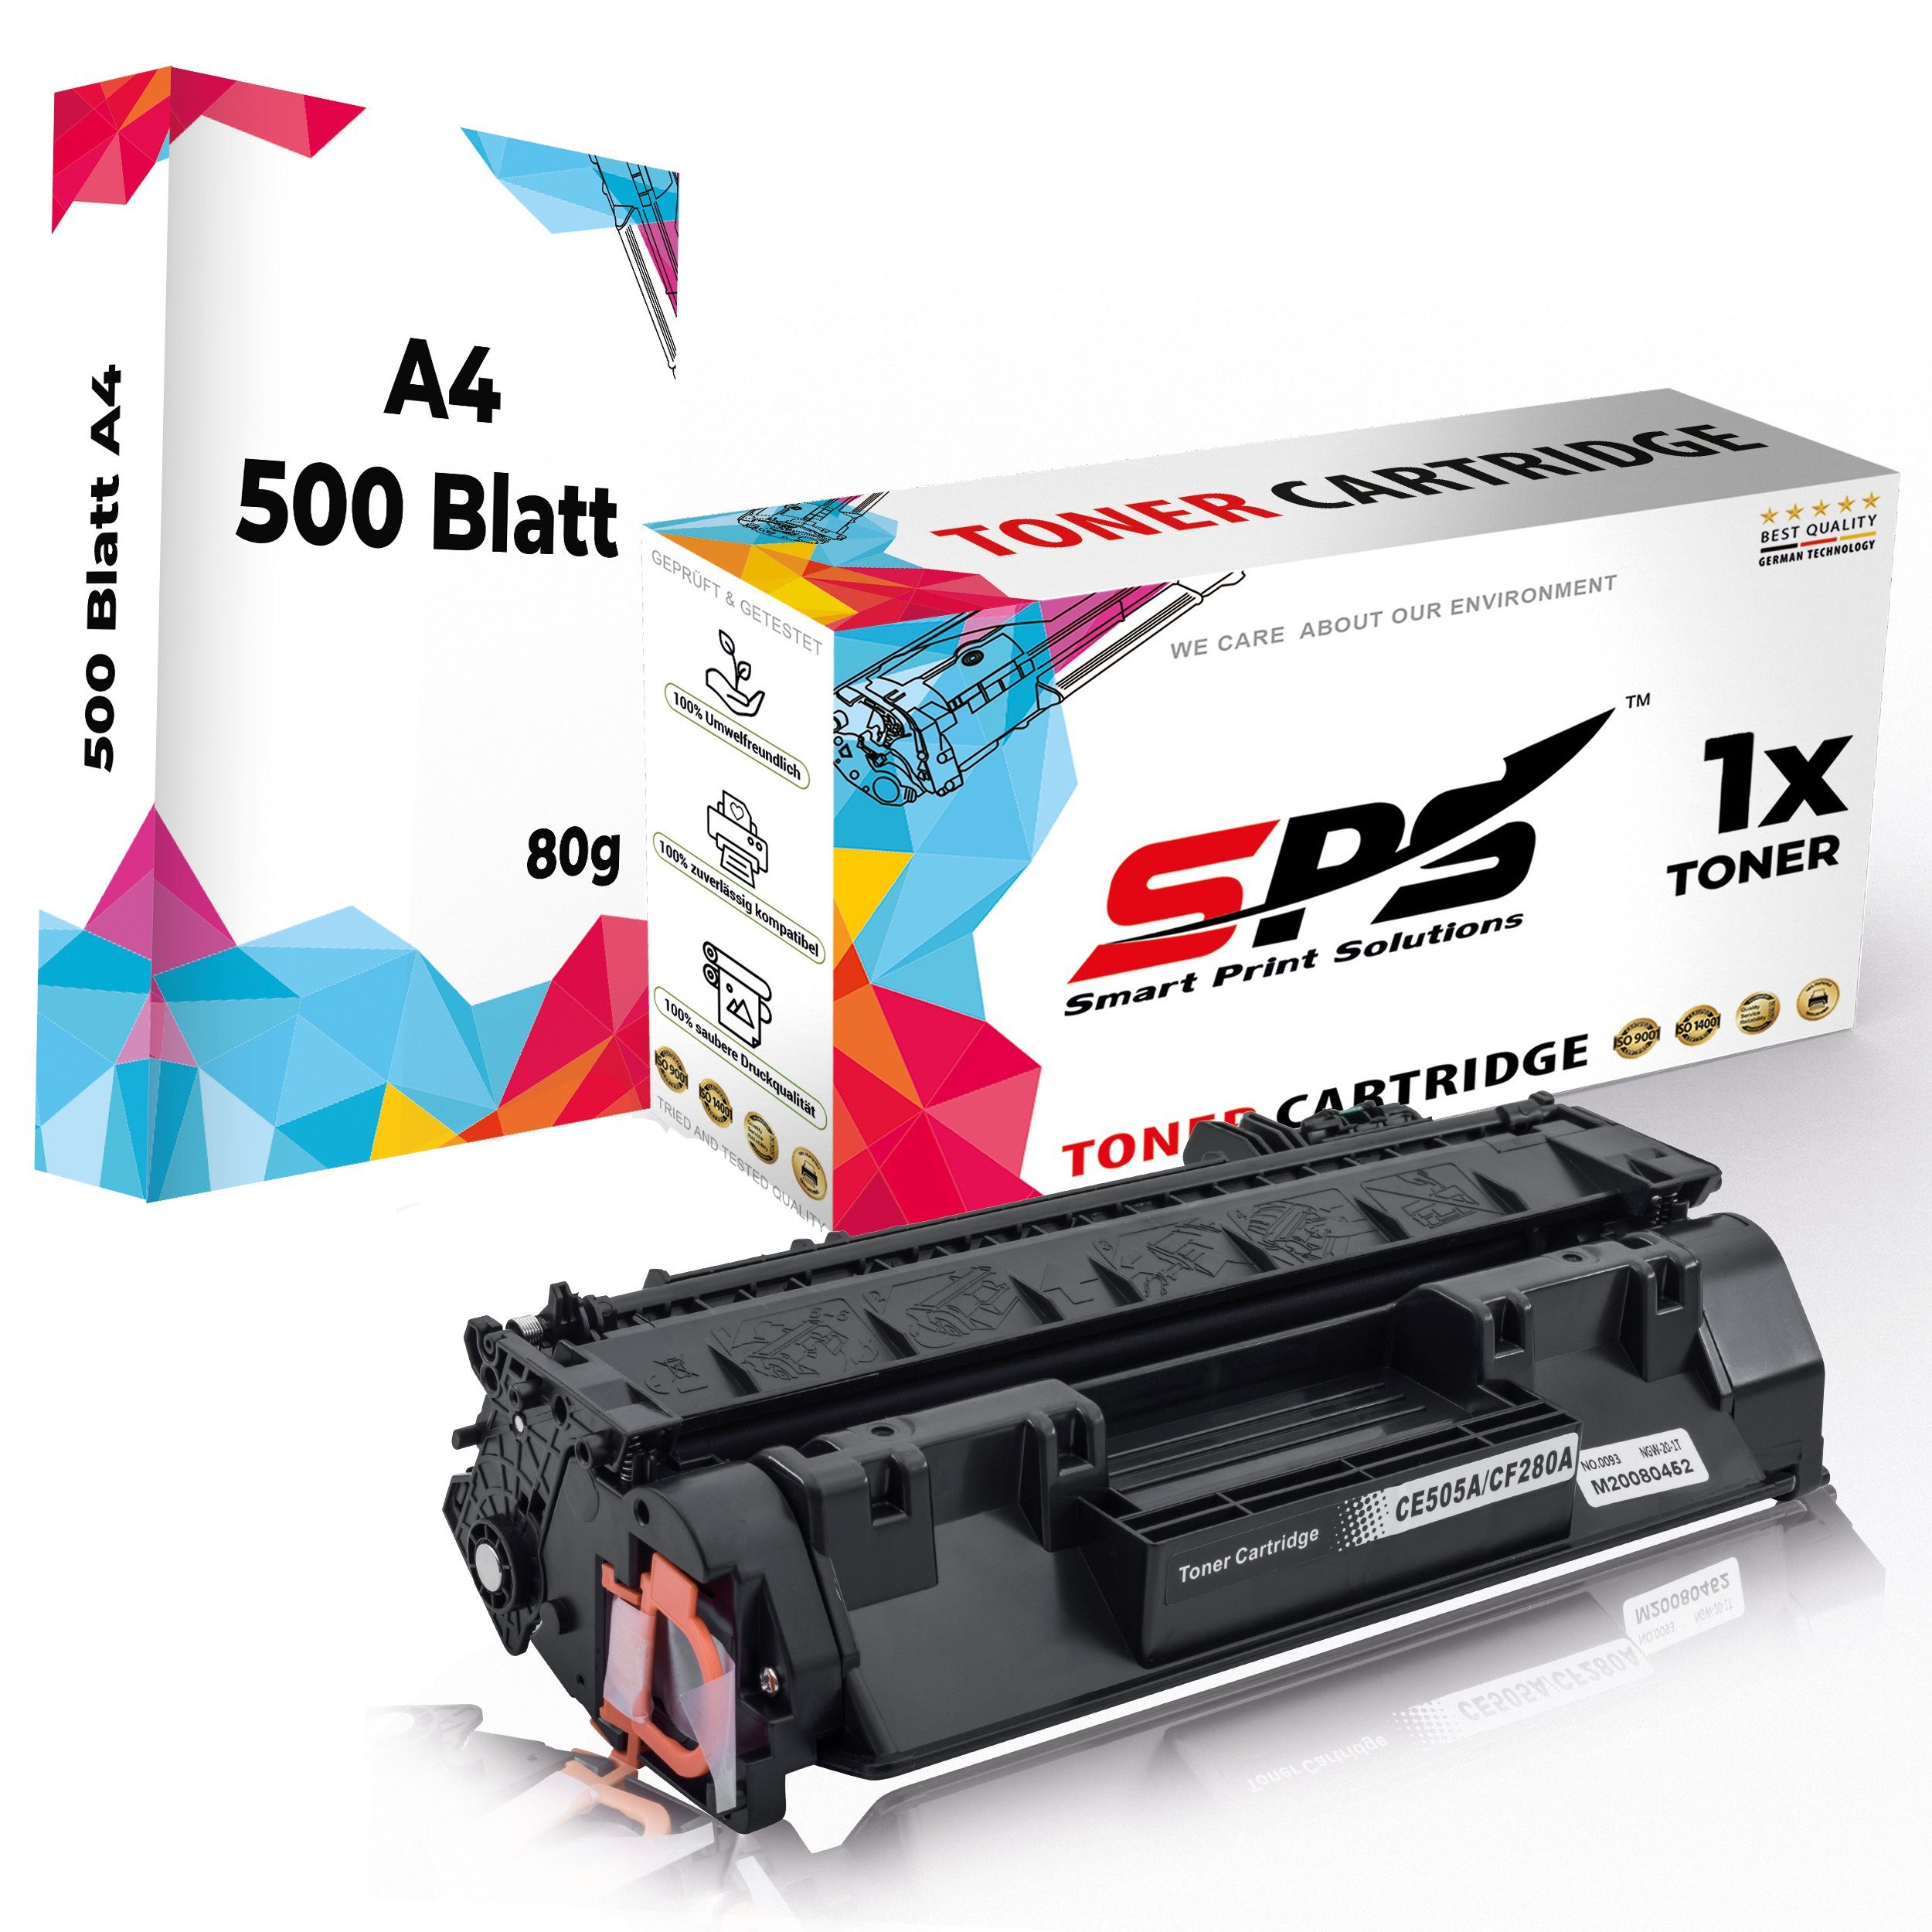 SPS Tonerkartusche Kompatibel für HP Laserjet Pro 400 M401A 80A CF280, (1er Pack + A4 Papier, 1x Toner (1x Schwarz)